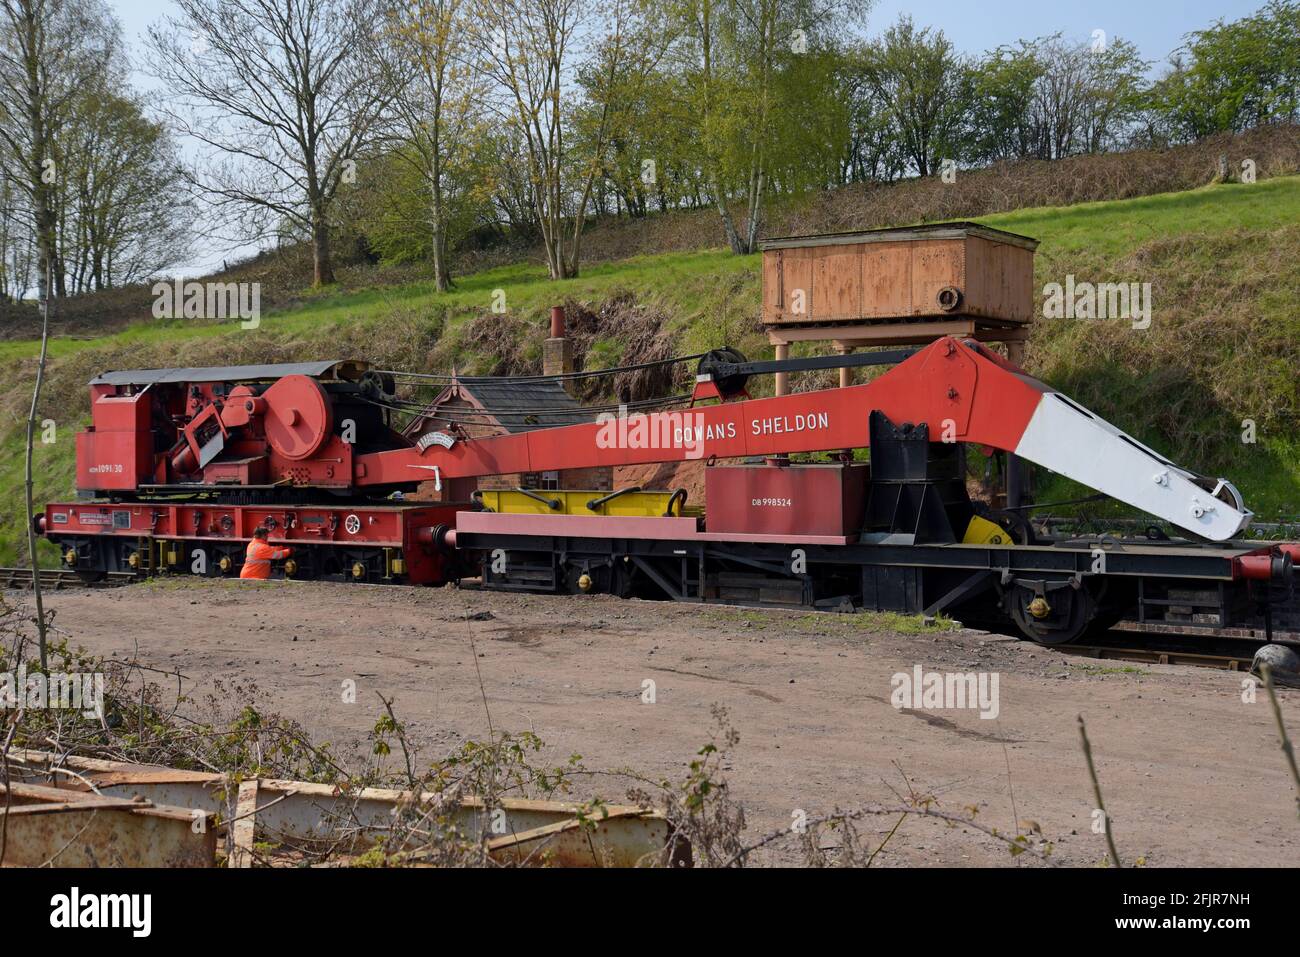 L'ex British Railways de Severn Valley Railway Cowans Sheldon 30 tonnes de grue de rupture à vapeur. Banque D'Images